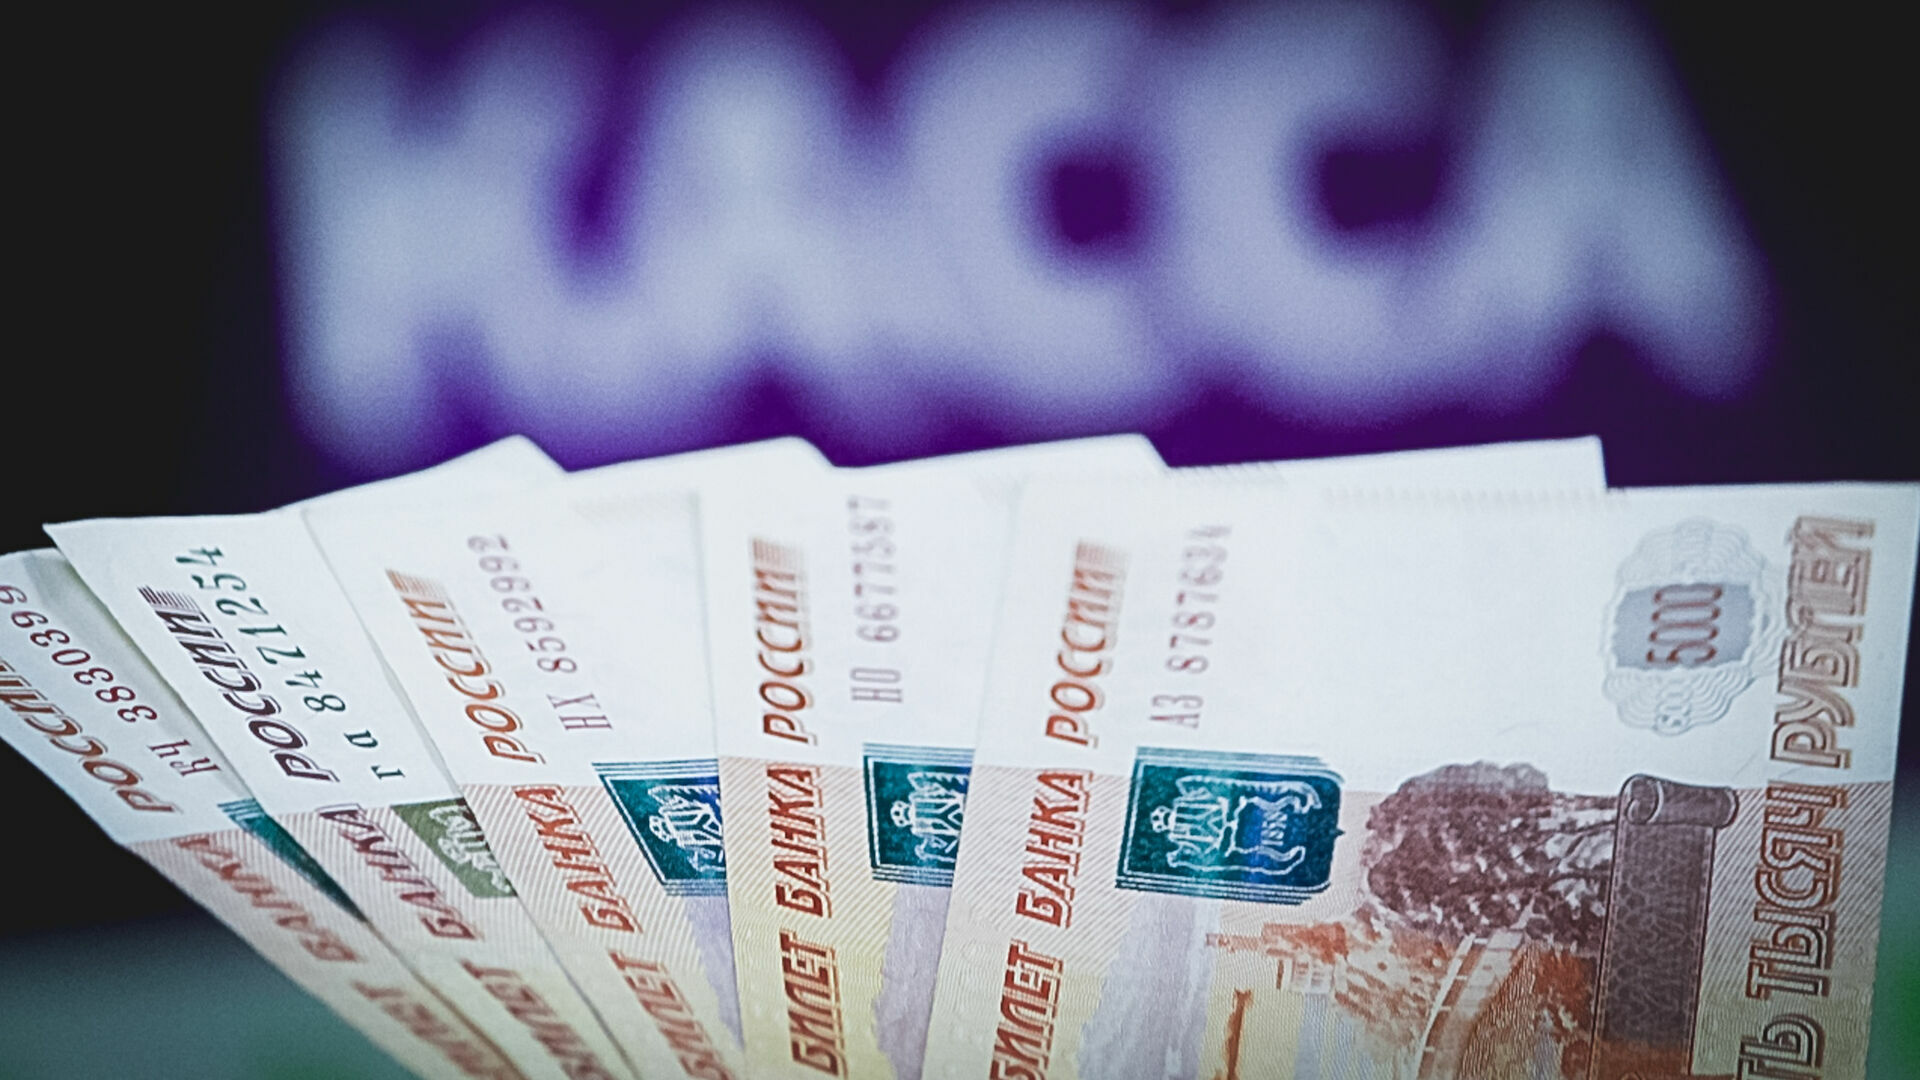 Бухгалтер муниципального предприятия за два года выписала себе незаконно 750 тысяч рублей